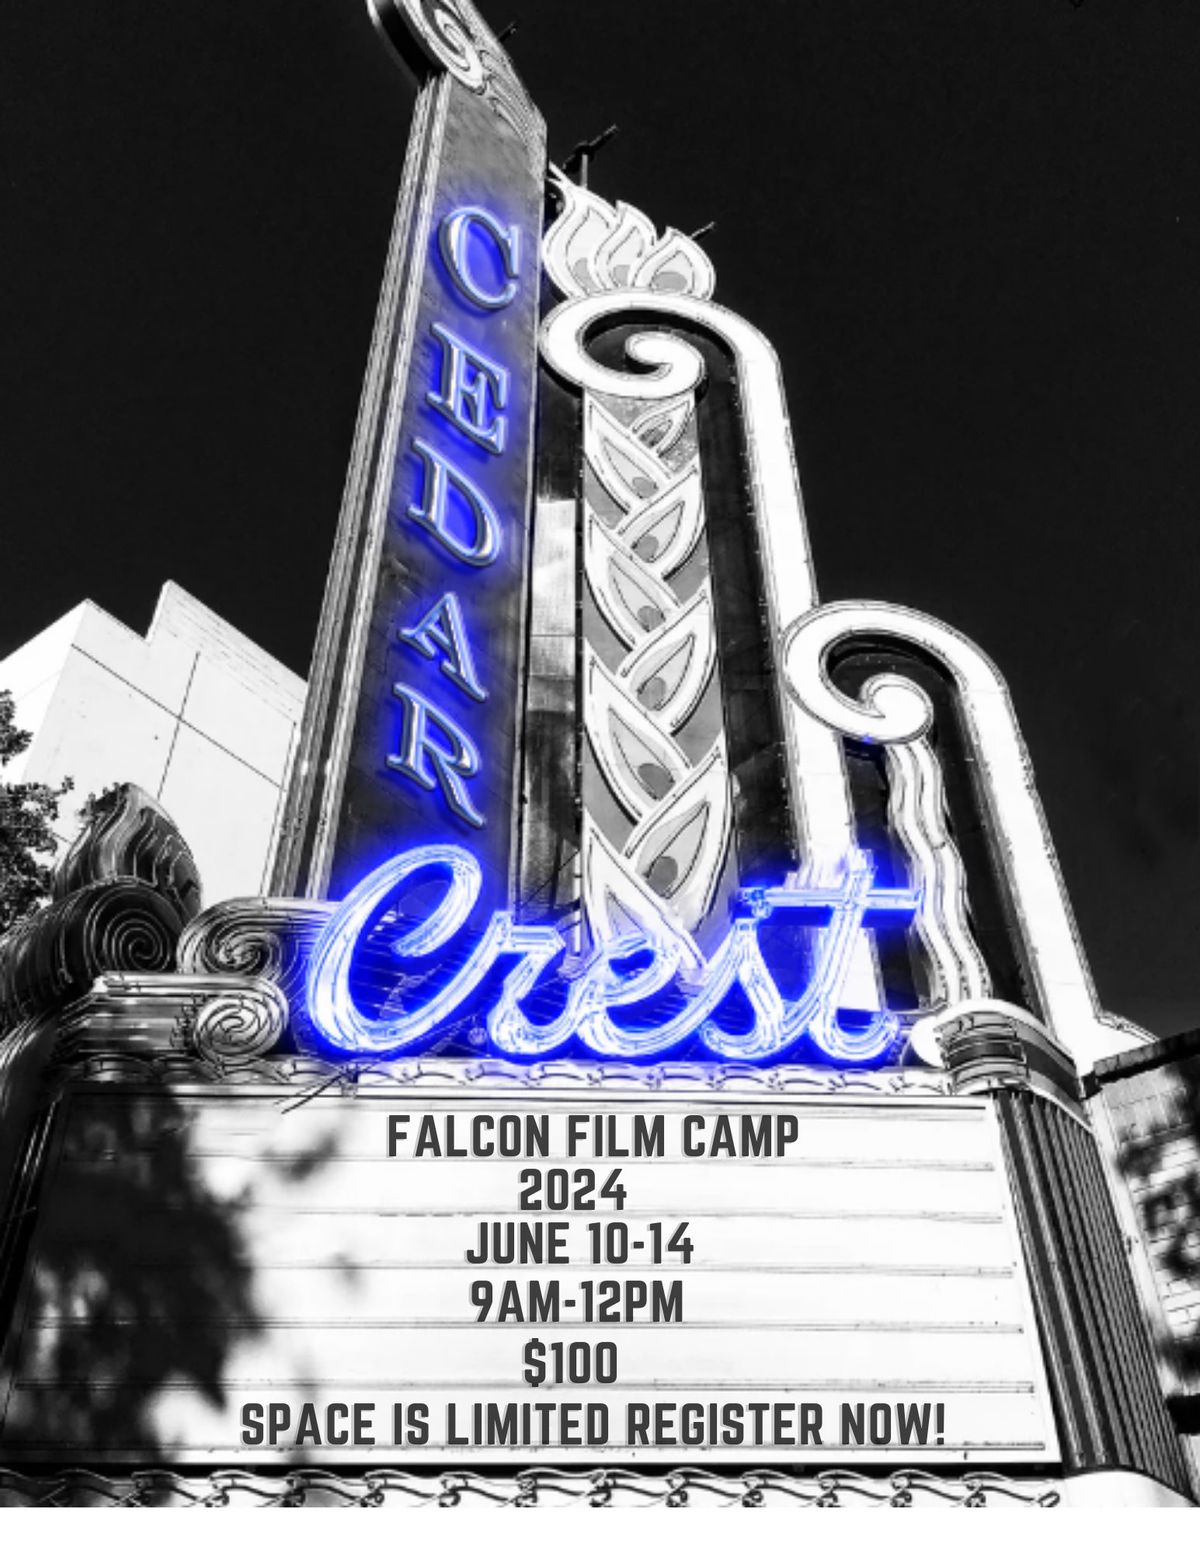 Falcon Film Camp 2024